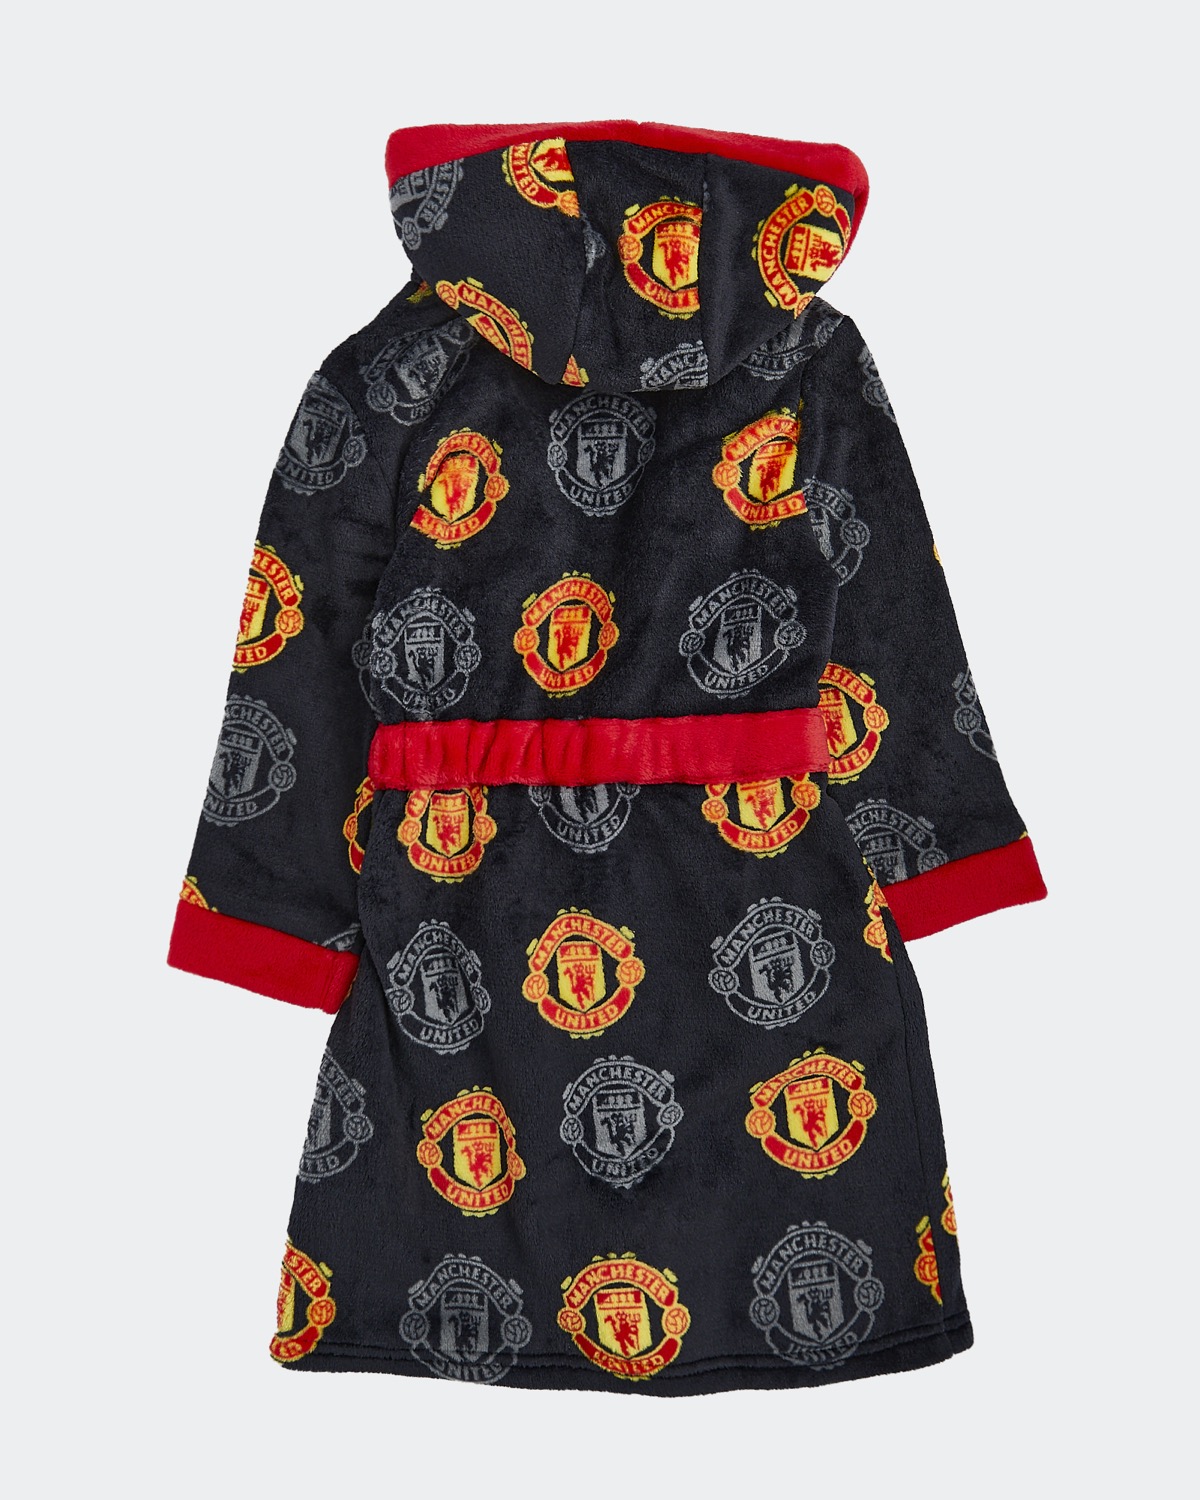 Licensed Mens Manchester United Dressing Gown Robe Fleece S M L MAN UTD  Black | eBay